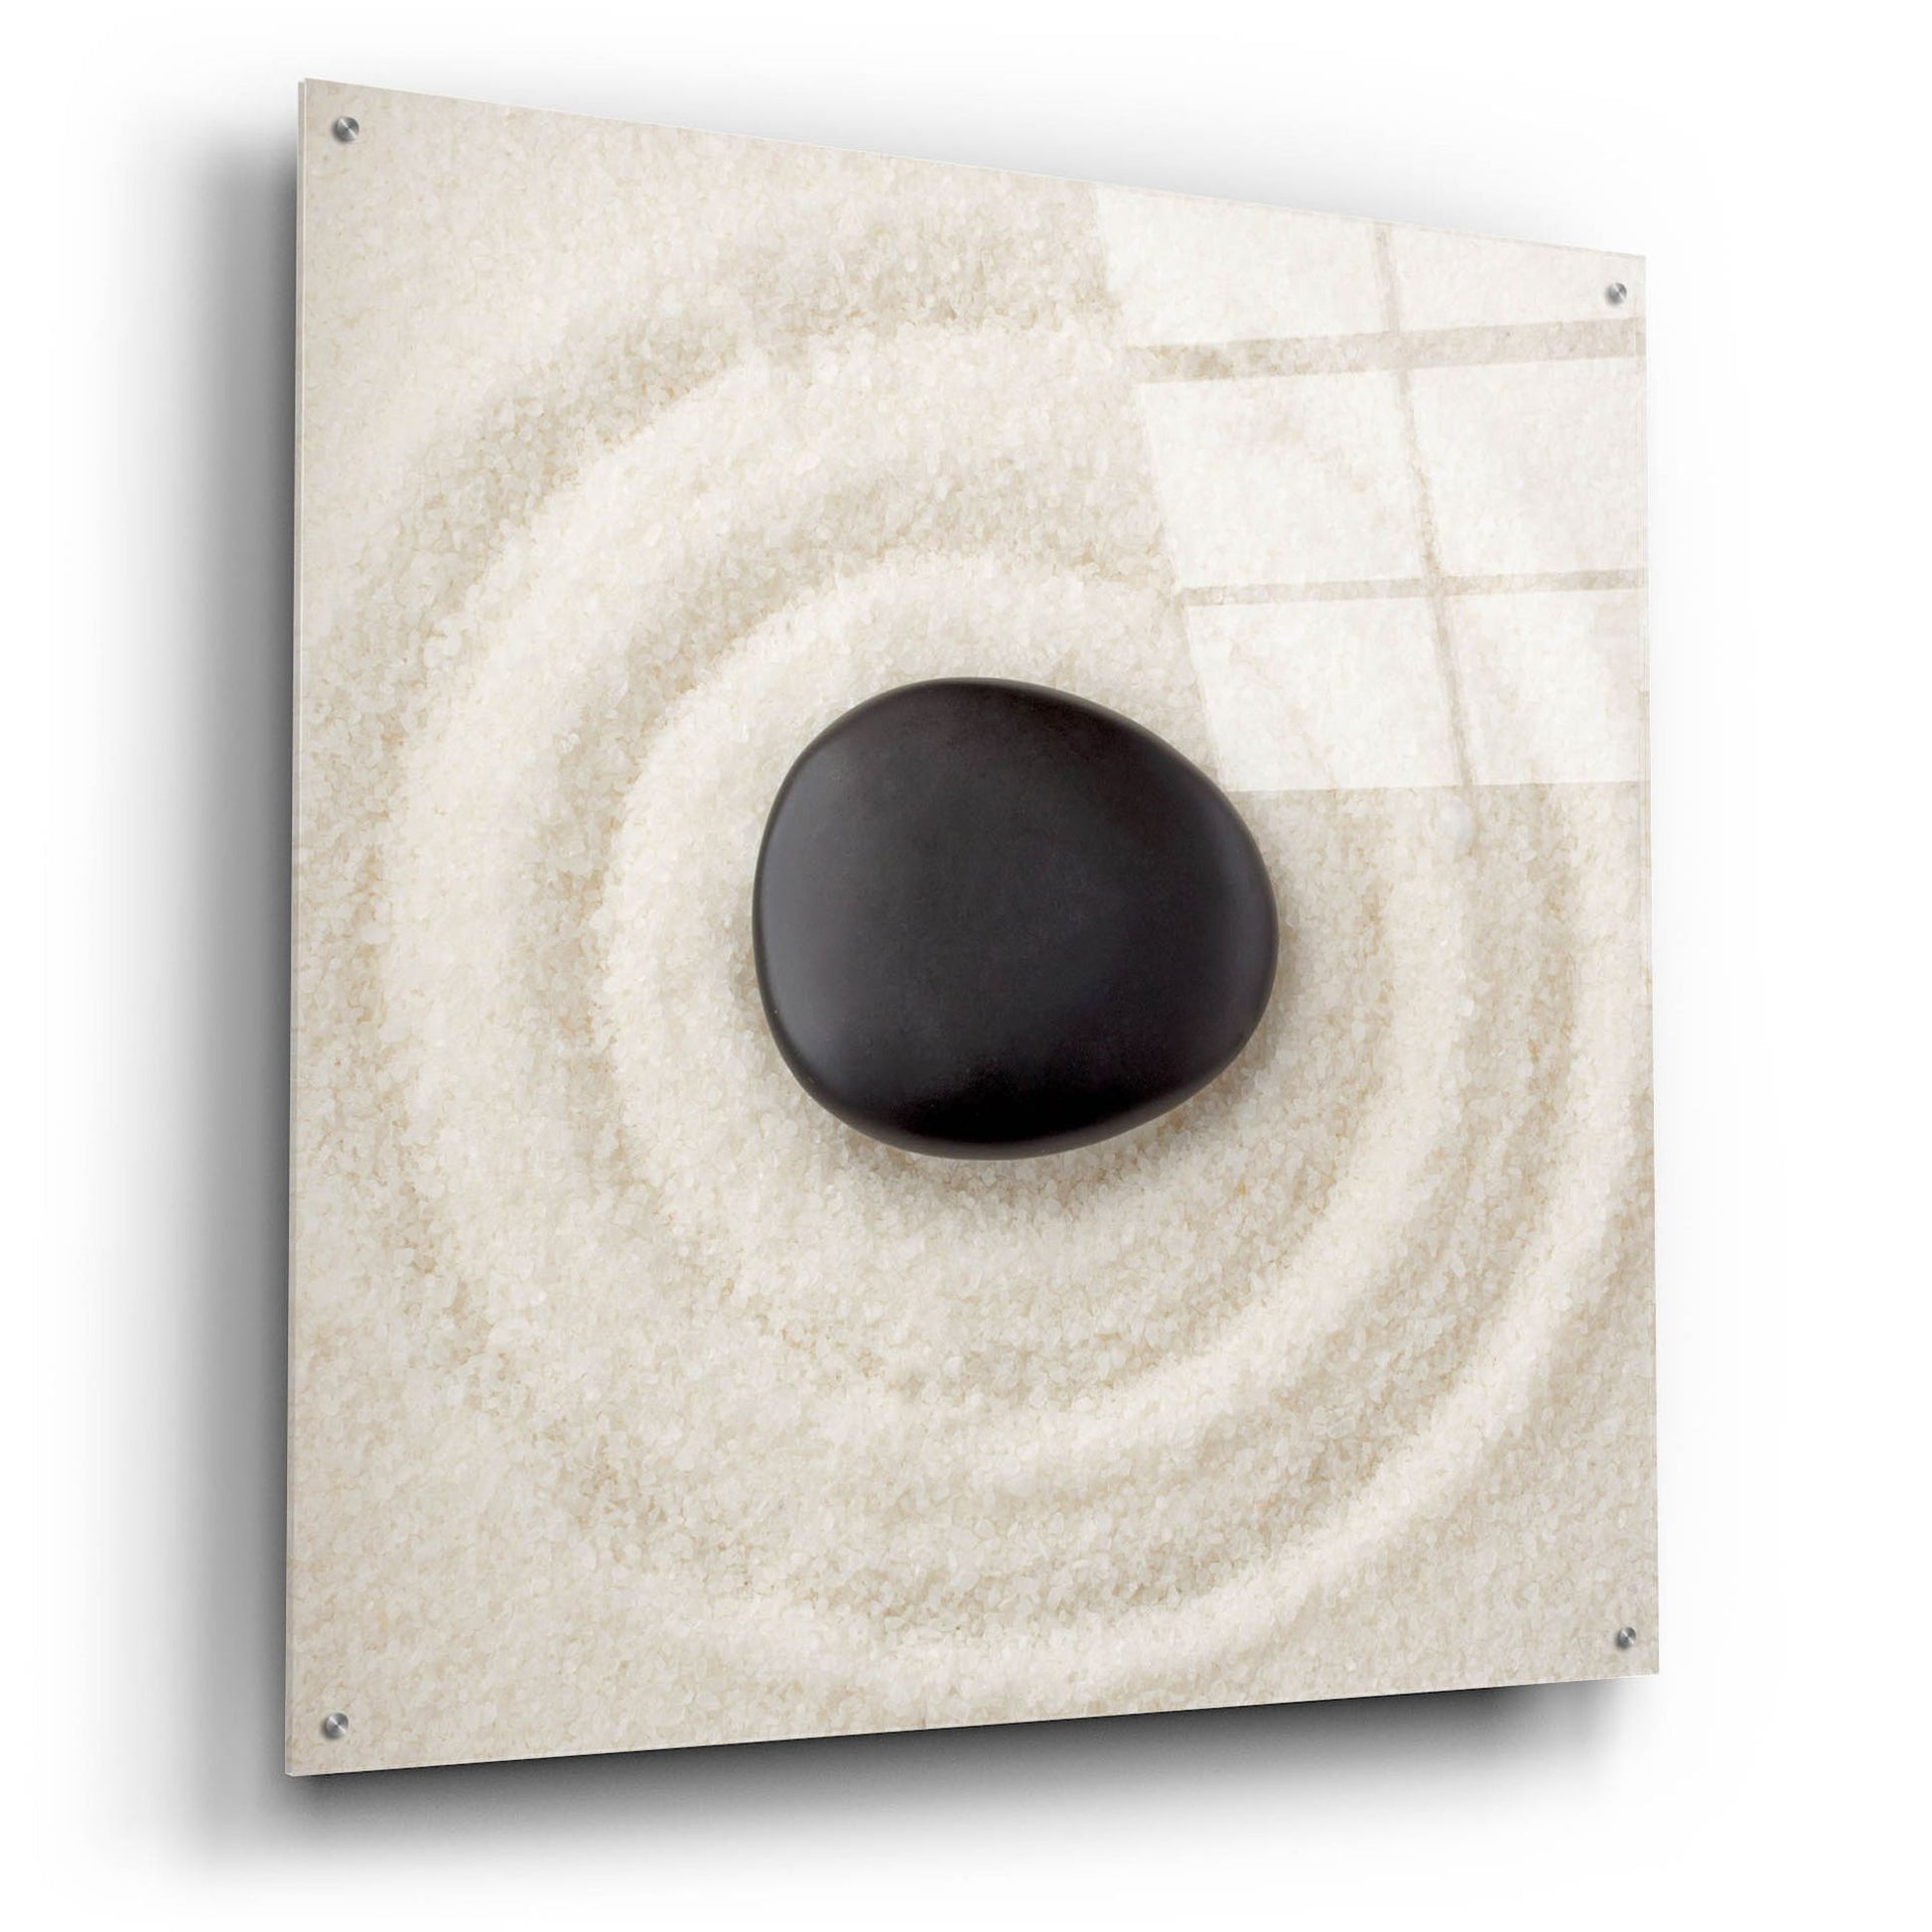 Epic Art 'Zen Pebble 1' by Photoinc Studio, Acrylic Glass Wall Art,36x36